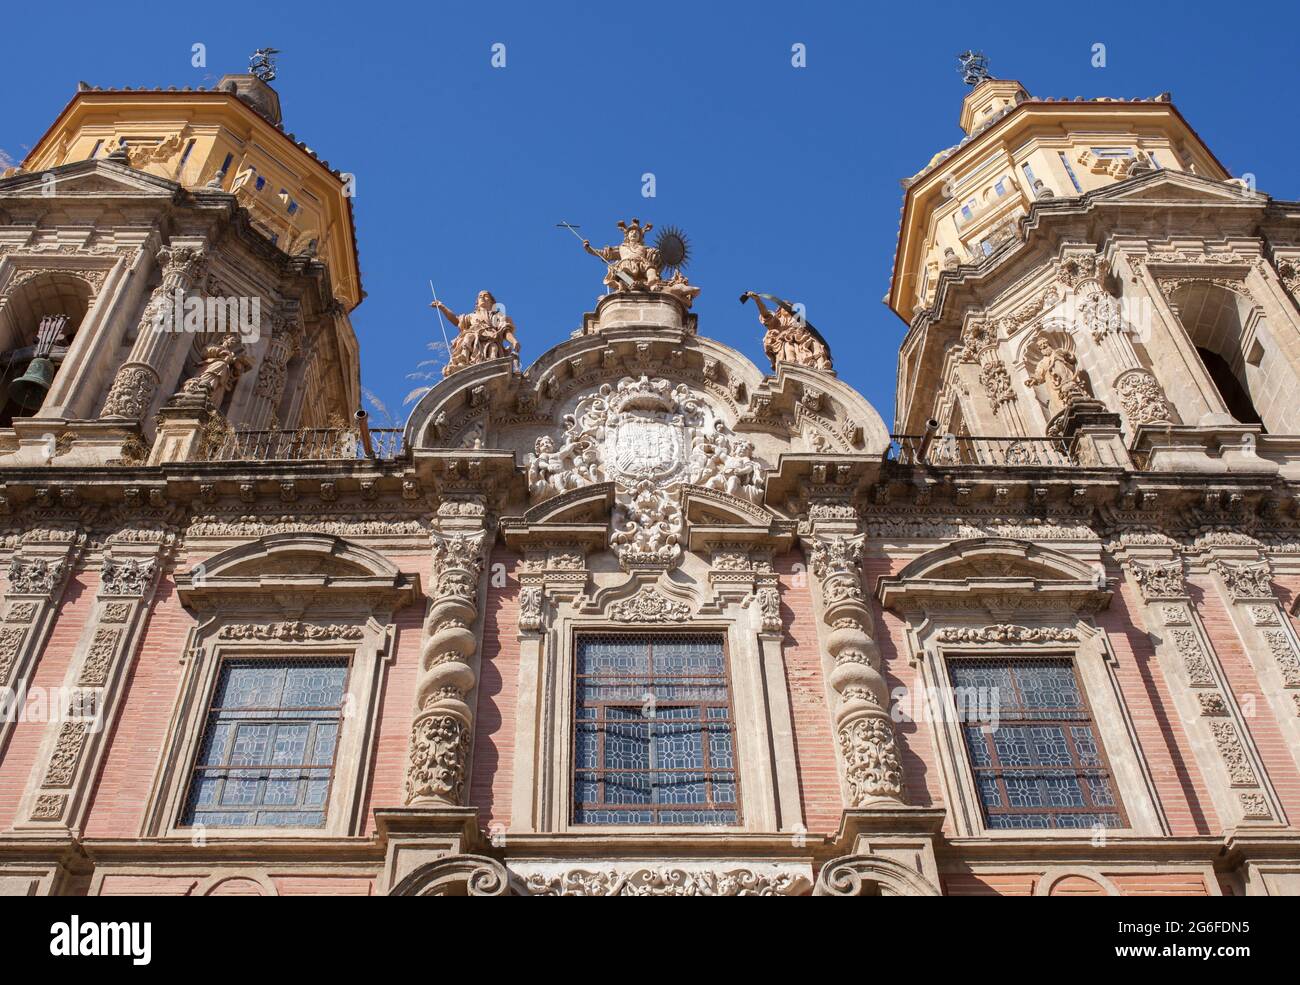 Kirche Saint Louis von Frankreich, Beispiel der Barockarchitektur im 18. Jahrhundert. Macarena Nachbarschaft, Sevilla, Spanien. Stockfoto